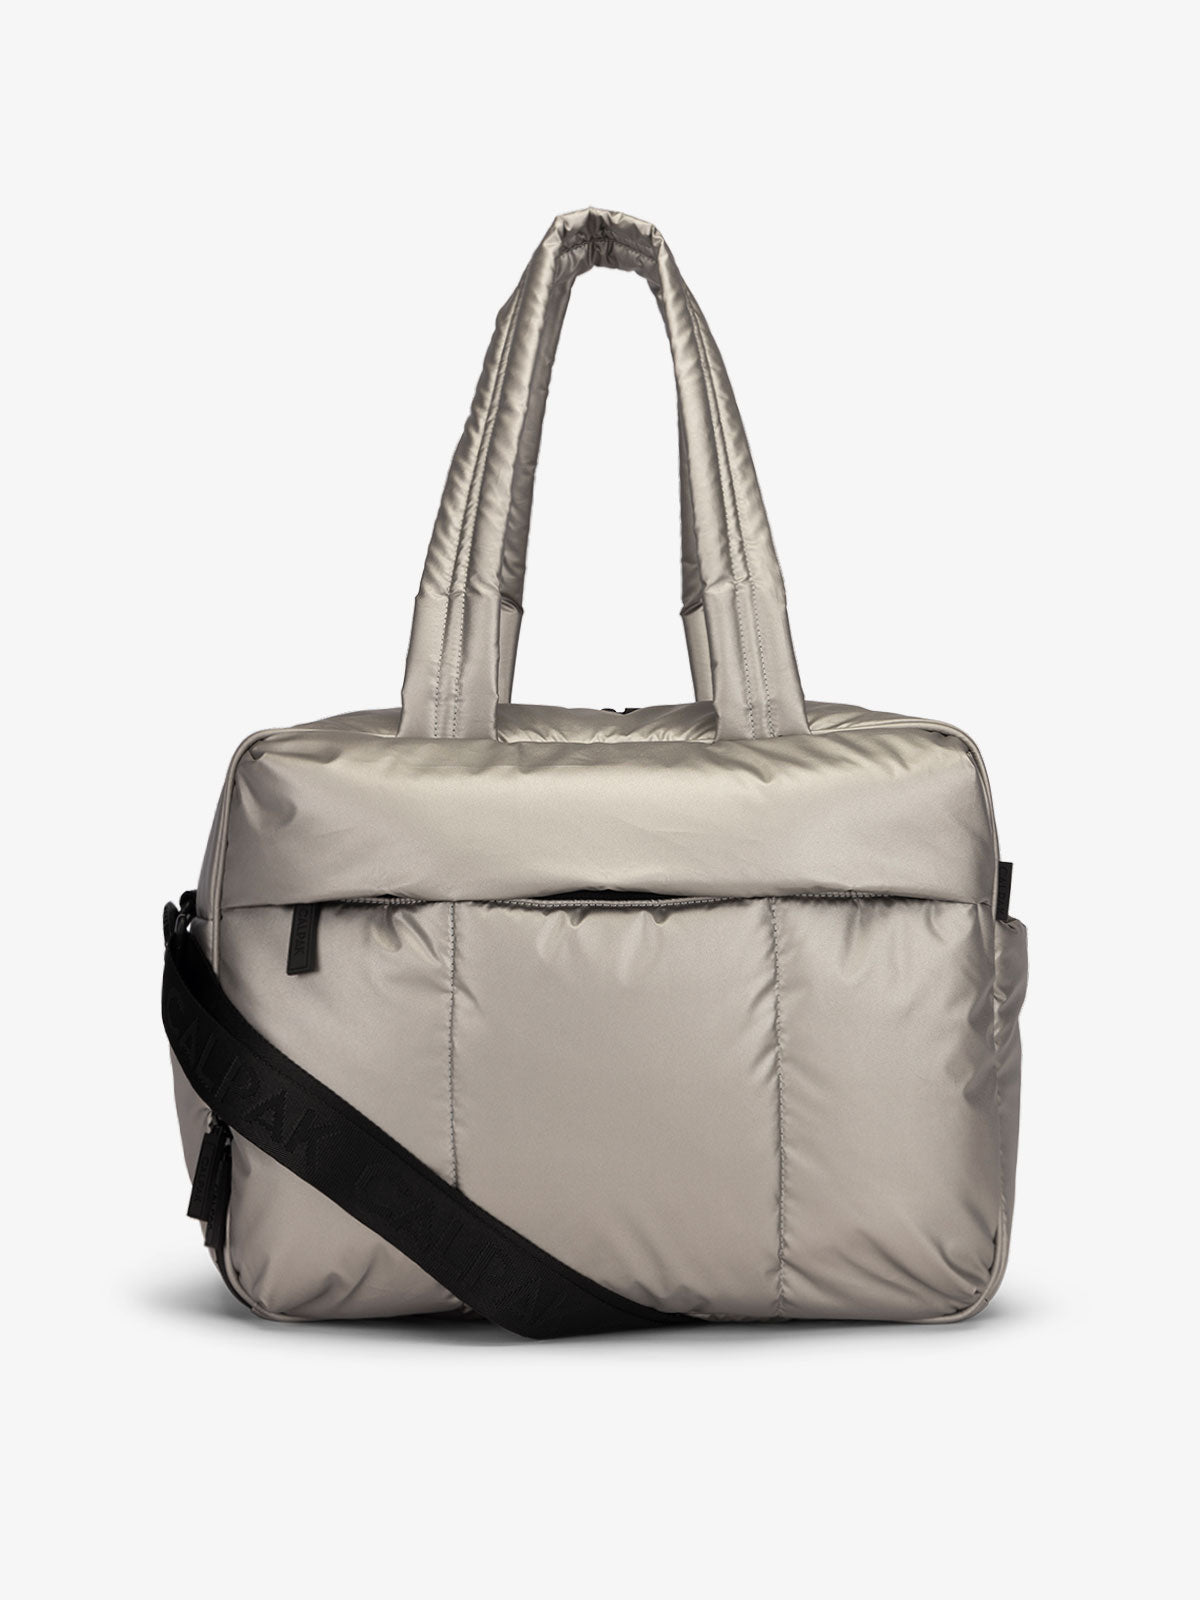 CALPAK Luka Duffel bag in metallic gray; DSM1901-GUNMETAL